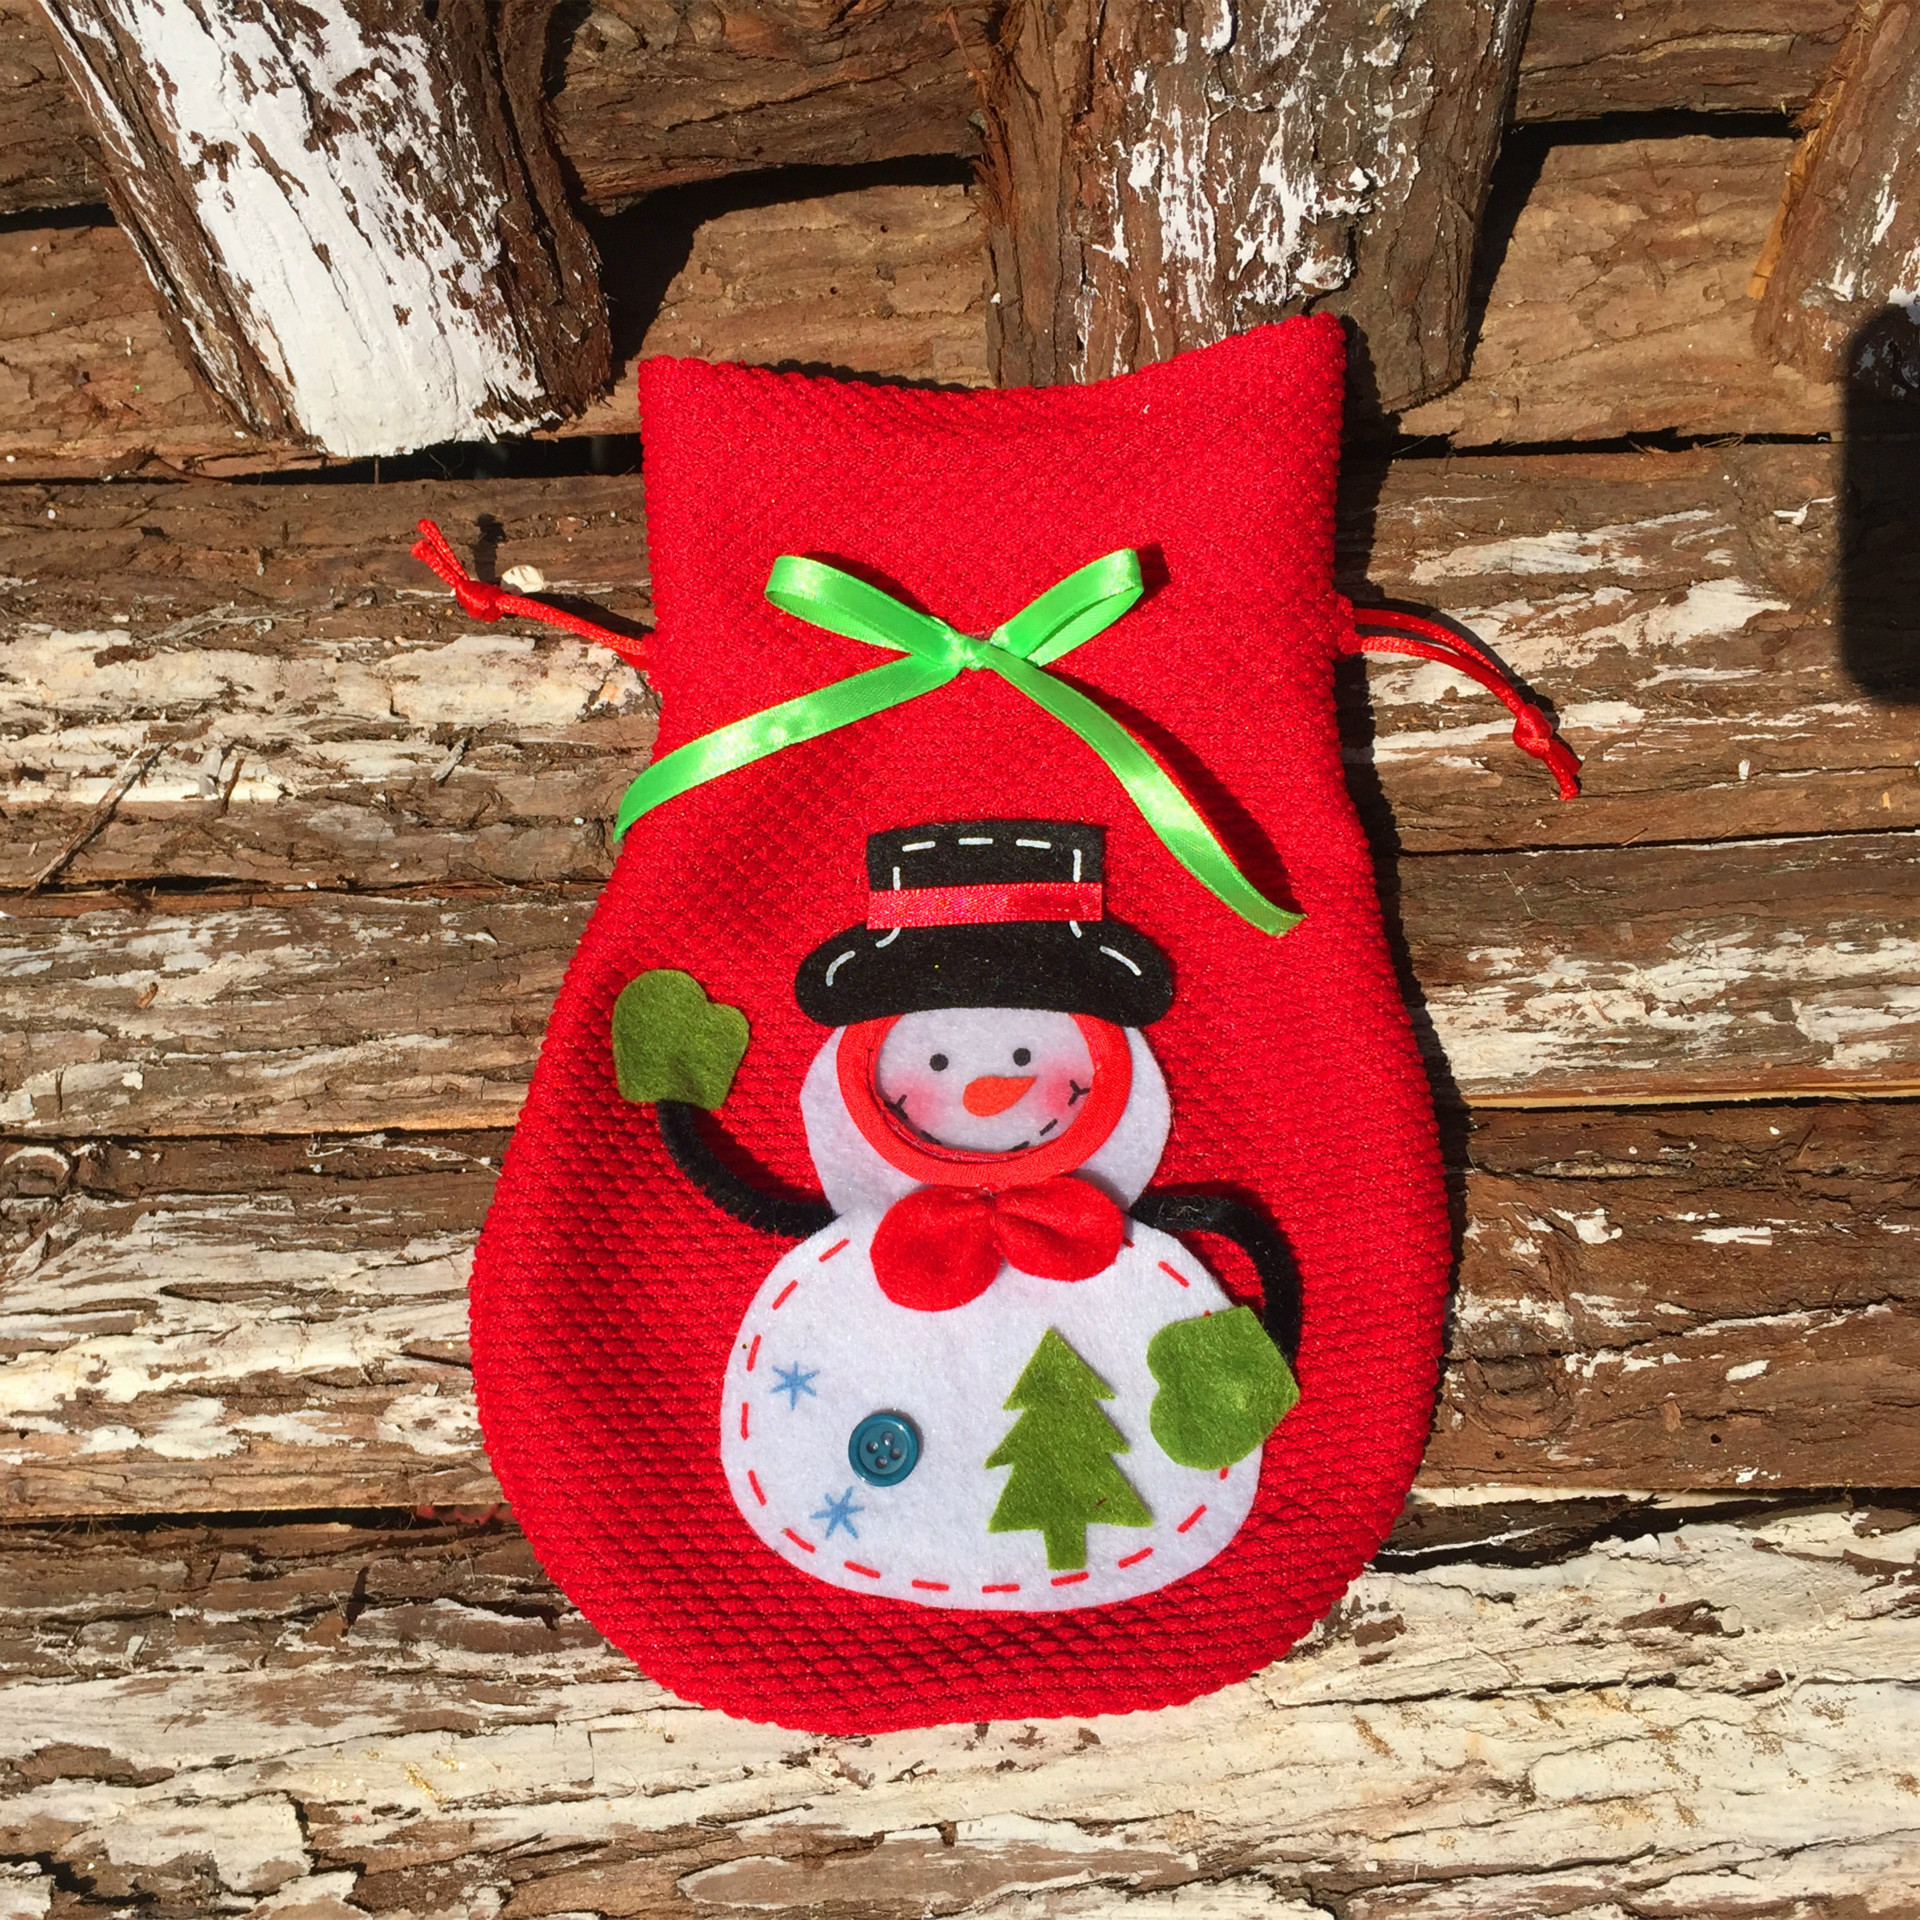 立體圣誕雪人糖果袋禮品袋創意家居實用禮品圣誕必備圣誕禮物袋